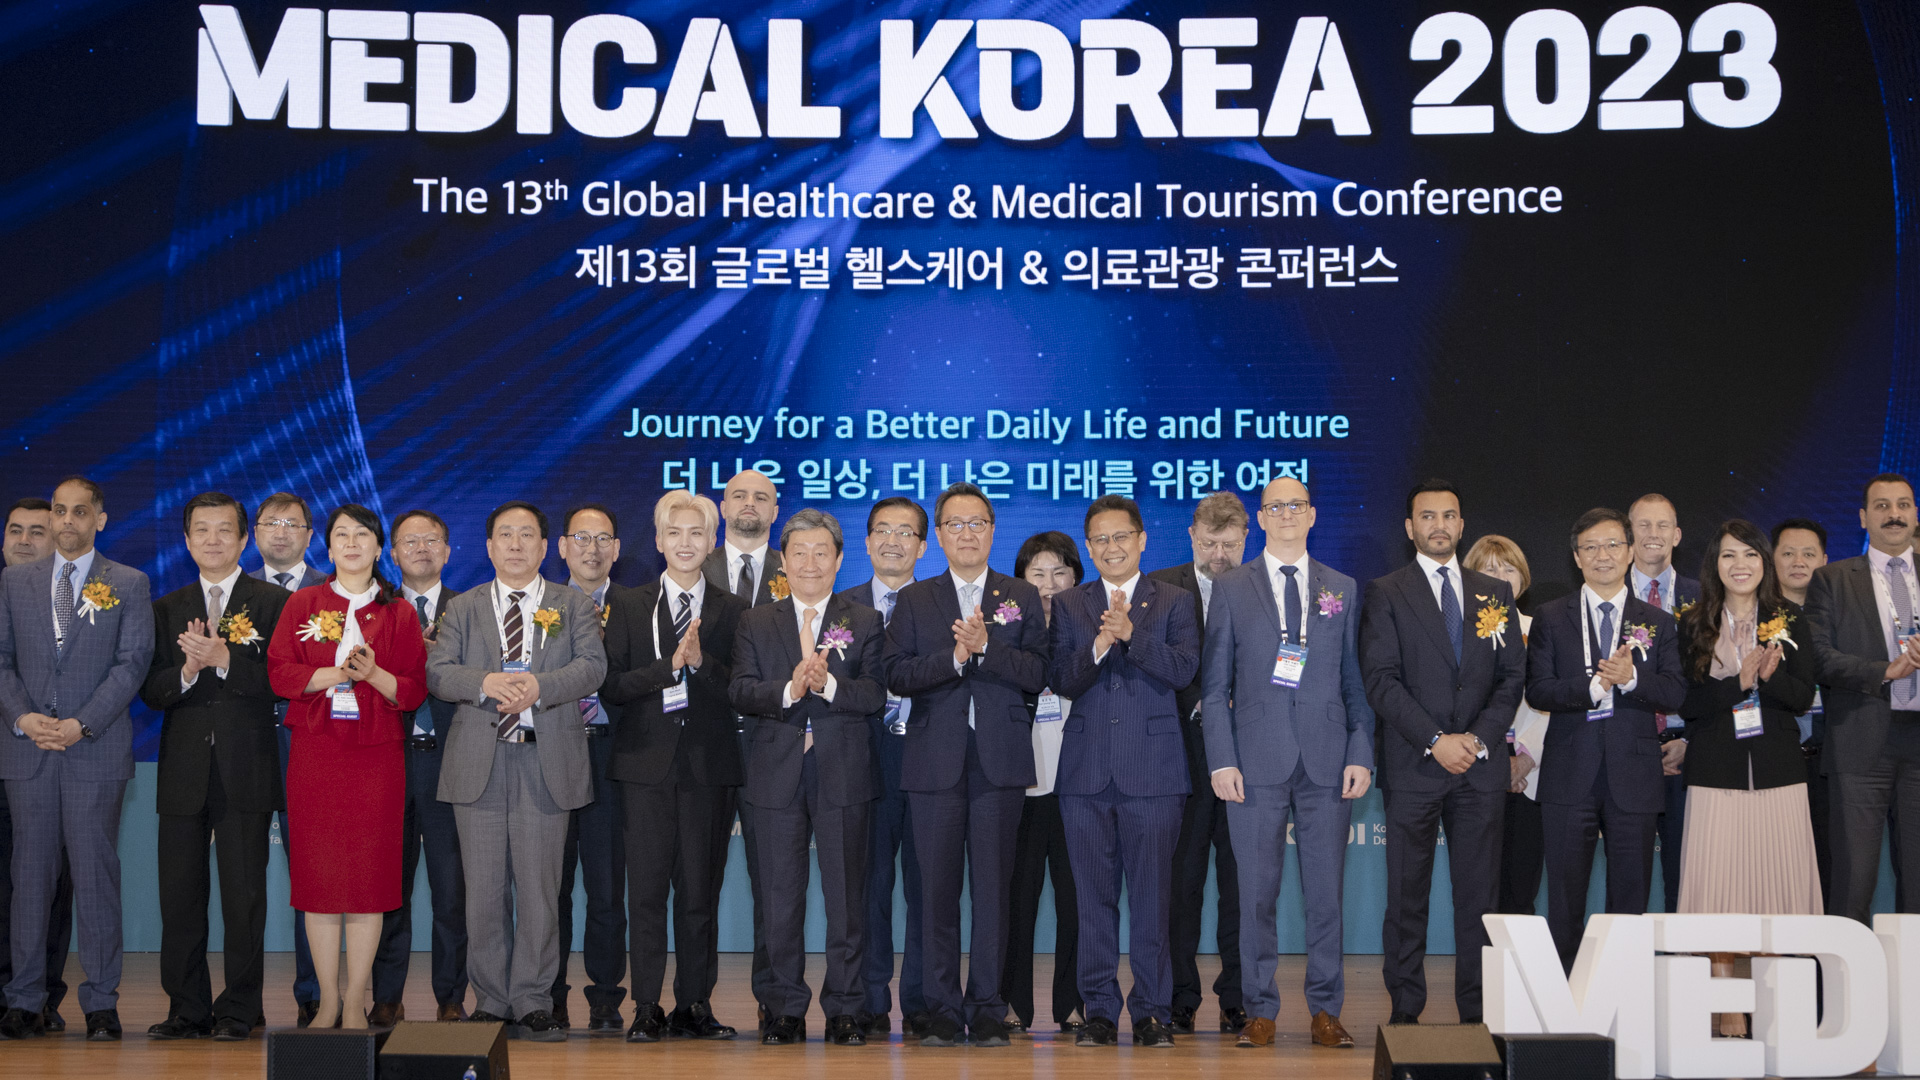 ‘더 나은 일상, 더 나은 미래를 위한 여정’ 「메디컬 코리아(Medical Korea) 2023」 사진30